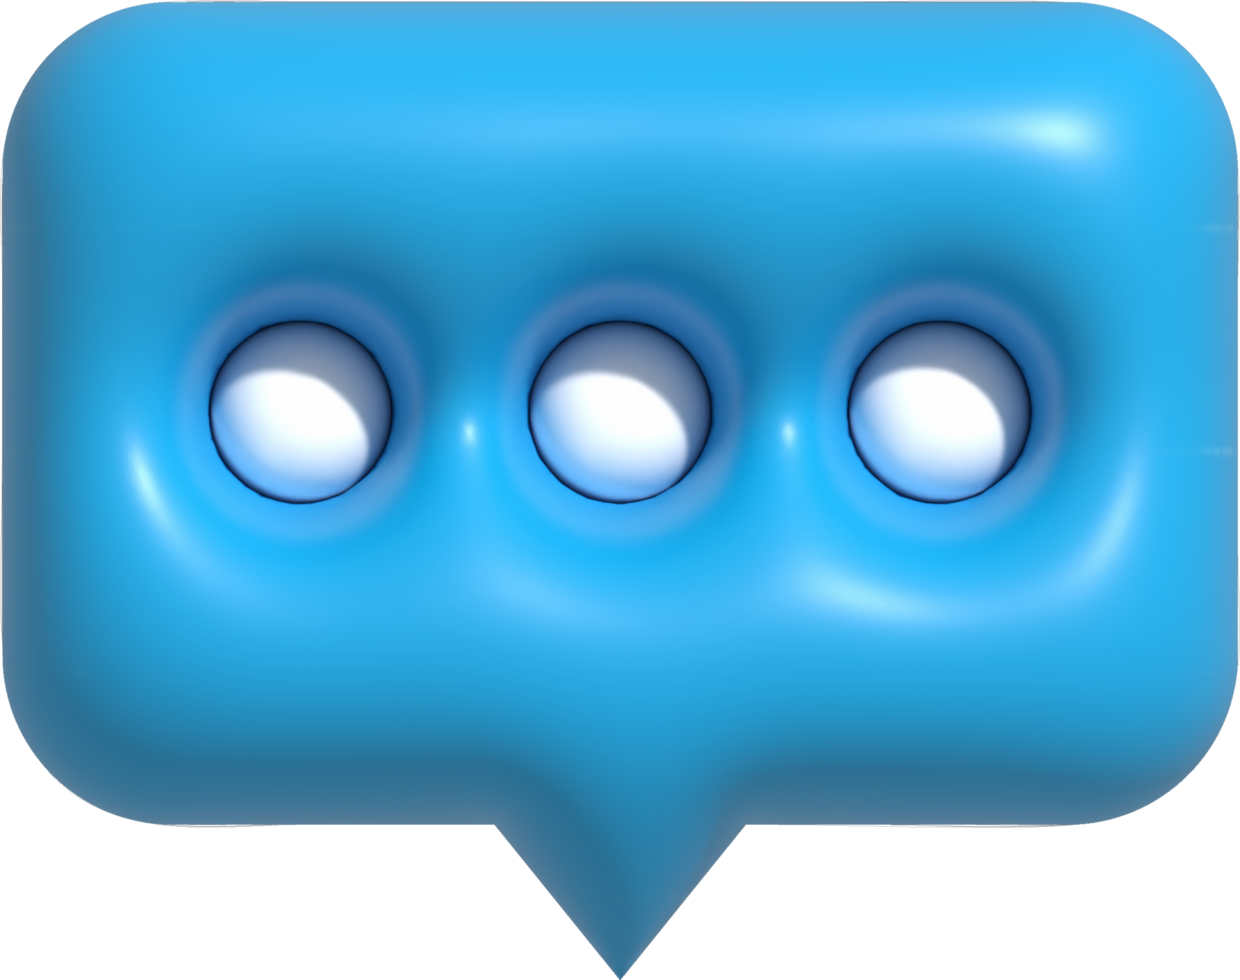 chat de burbujas de voz 3d con puntos dentro, icono de notificación de mensaje, ilustración de representación 3d de chat de burbujas png